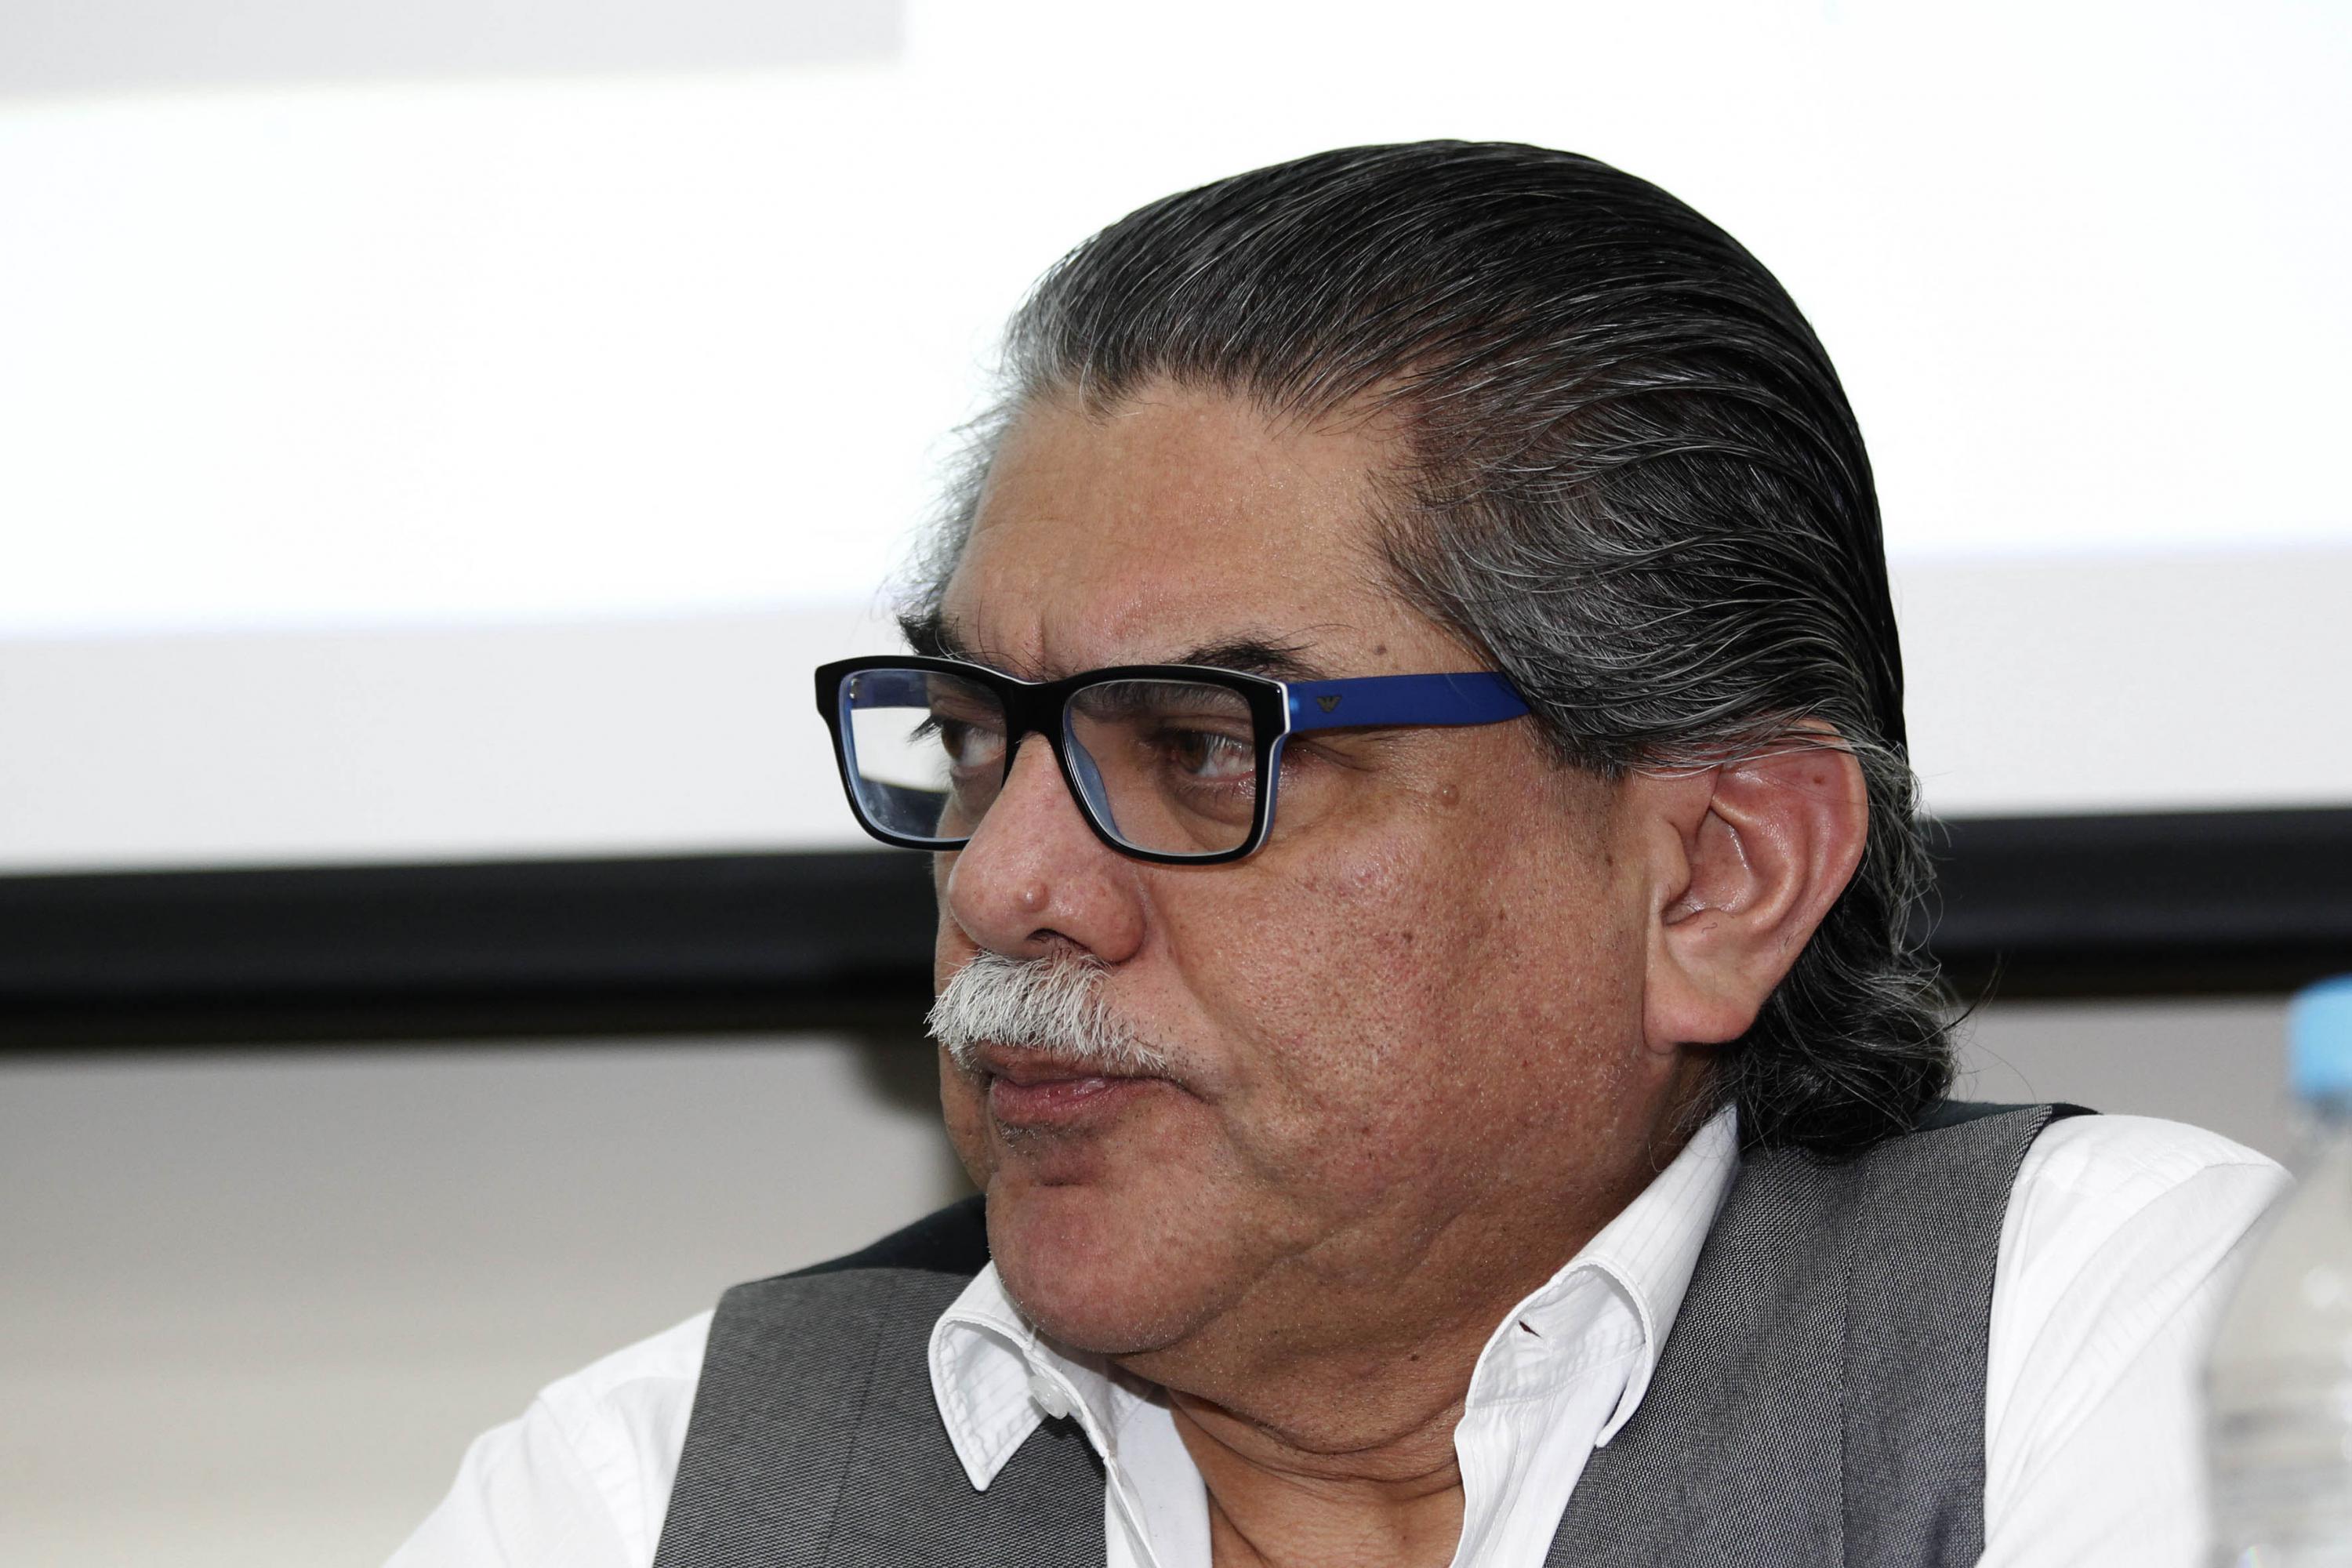  Manuel Falcón Morales, comunicador y monero.